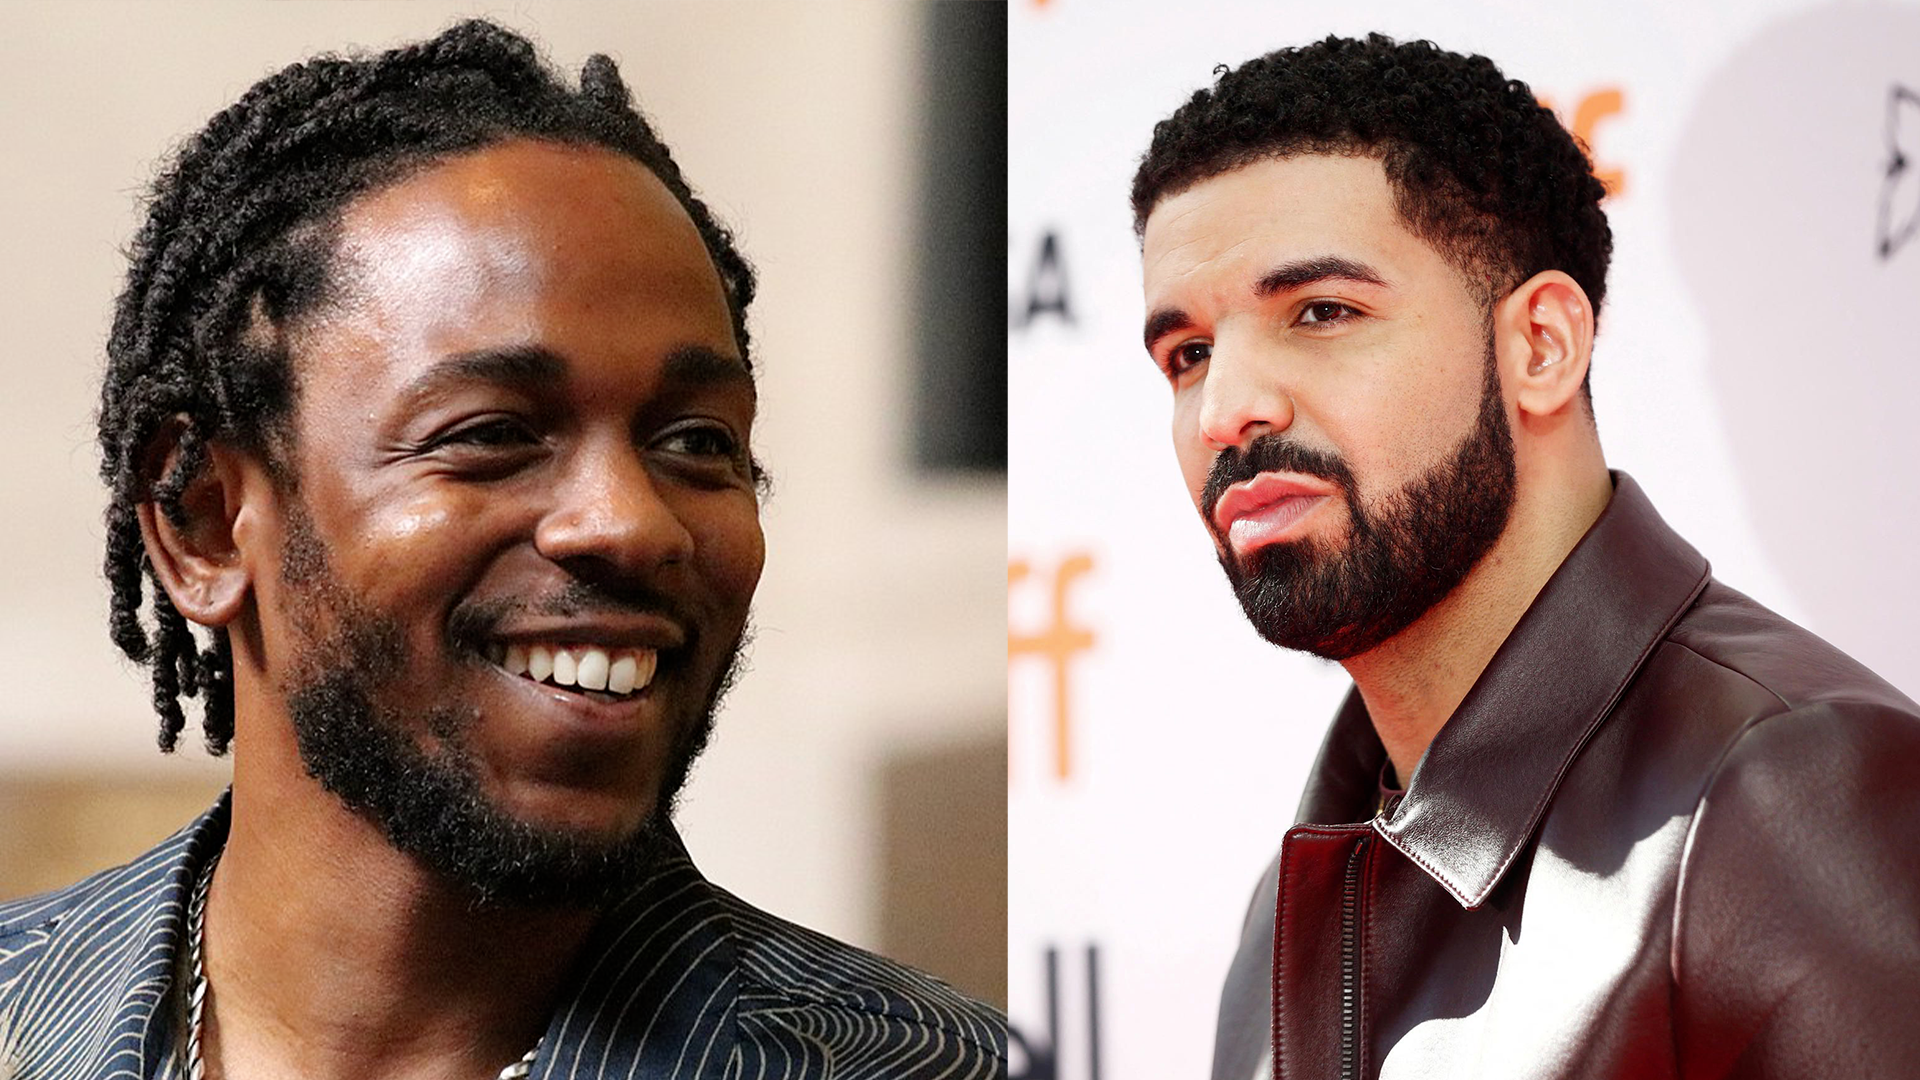 Depuis quelques jours, les deux rappeurs Drake et Kendrick Lamar s'attaquent à coups de morceaux vindicatifs, appelés des « Diss Tracks »